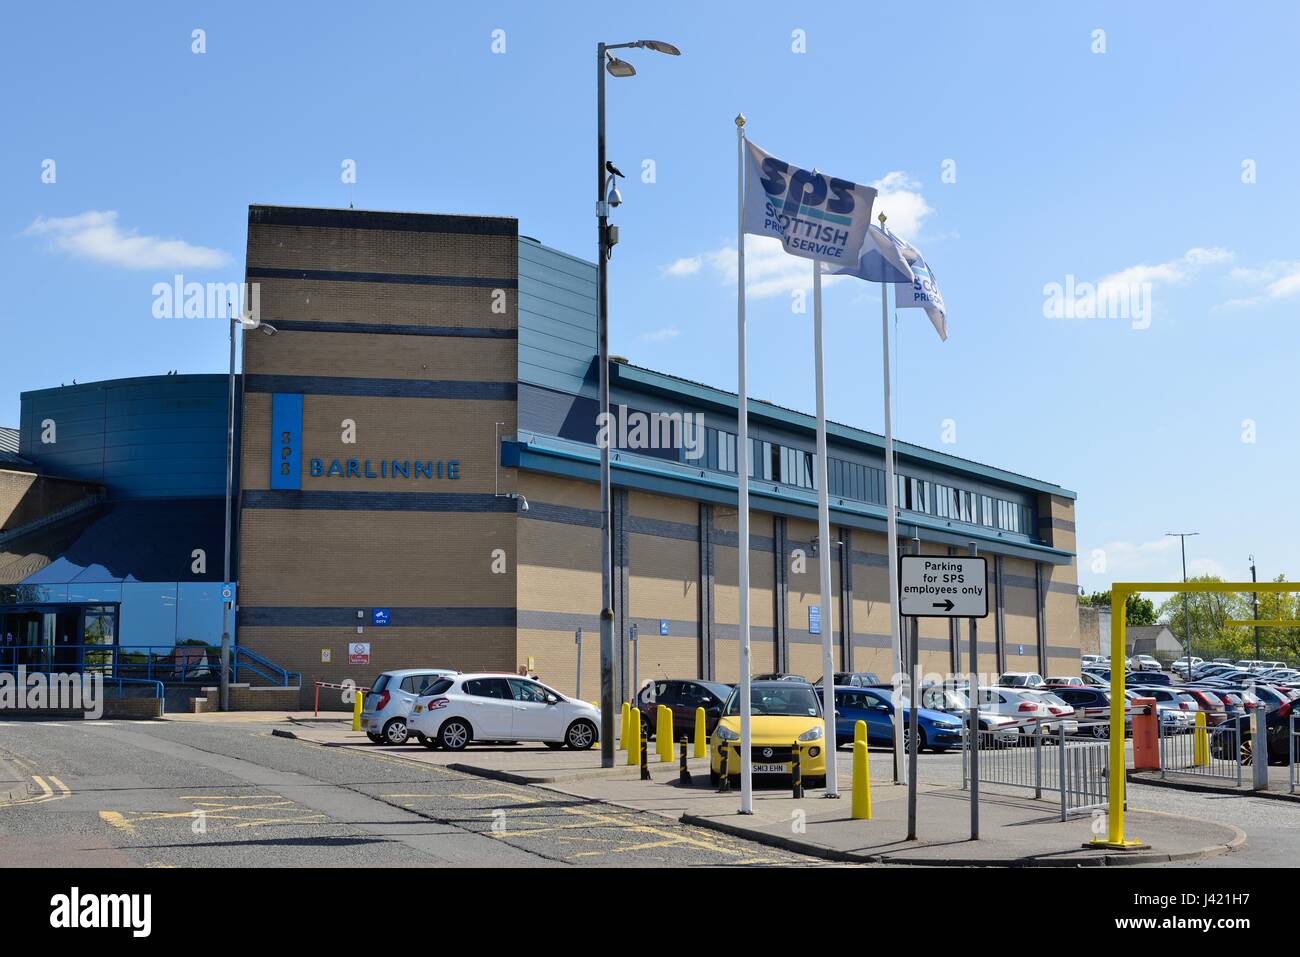 Entrée principale de l'Administration pénitentiaire écossaise's Prison Barlinnie, à Glasgow, Écosse, Royaume-Uni Banque D'Images